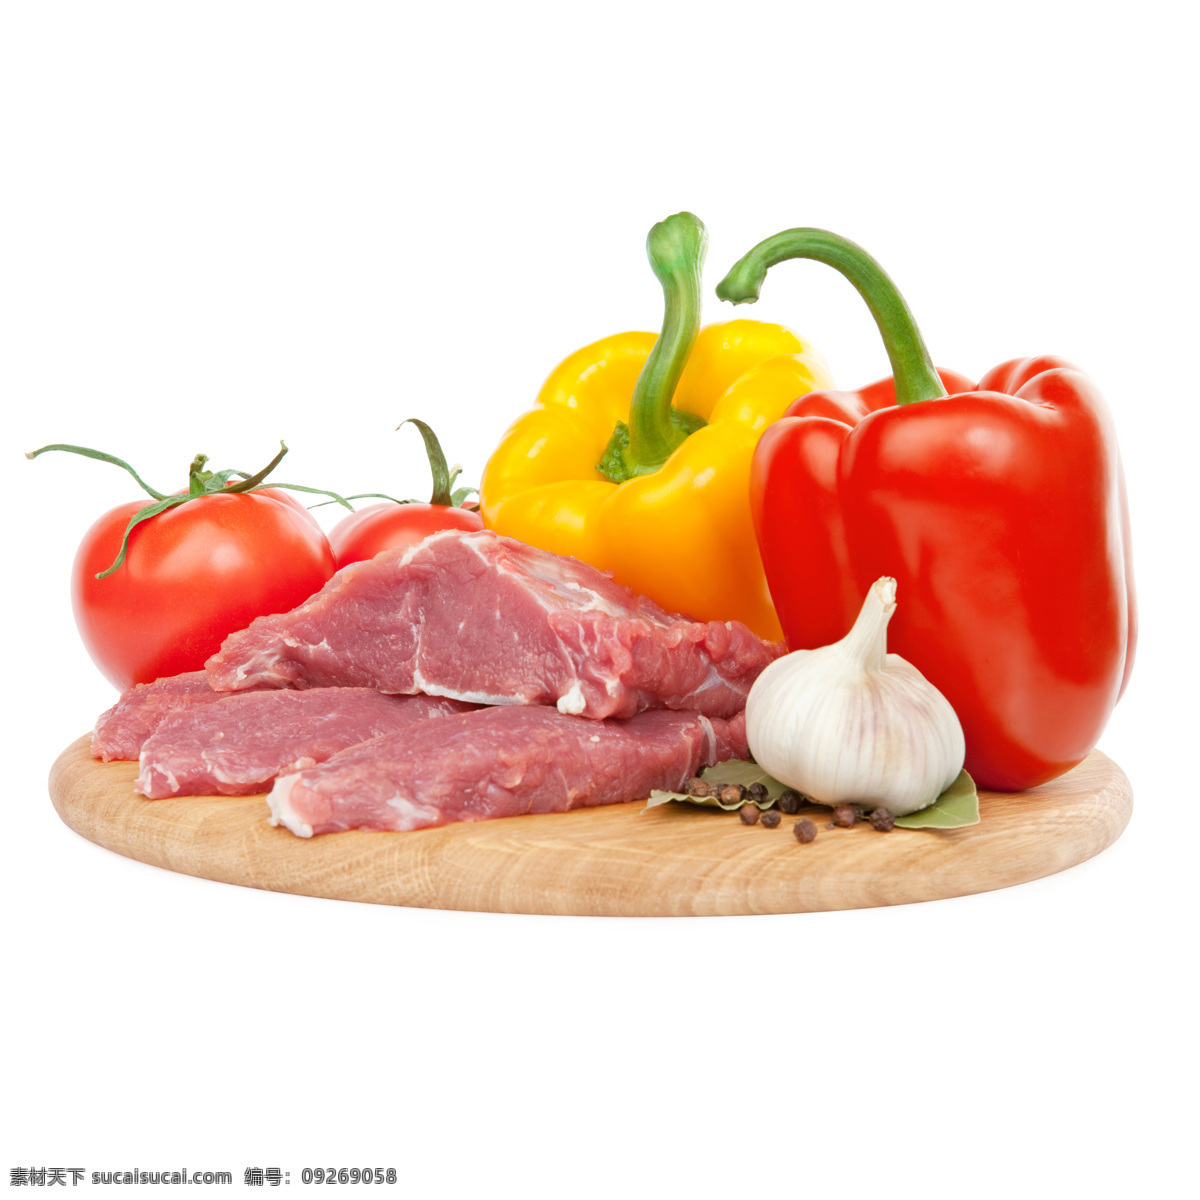 菜板 上 肉食 辣椒 蔬菜 肉类 食物 大蒜 西红柿 食物原材料 石材 餐厅美食 食材原料 餐饮美食